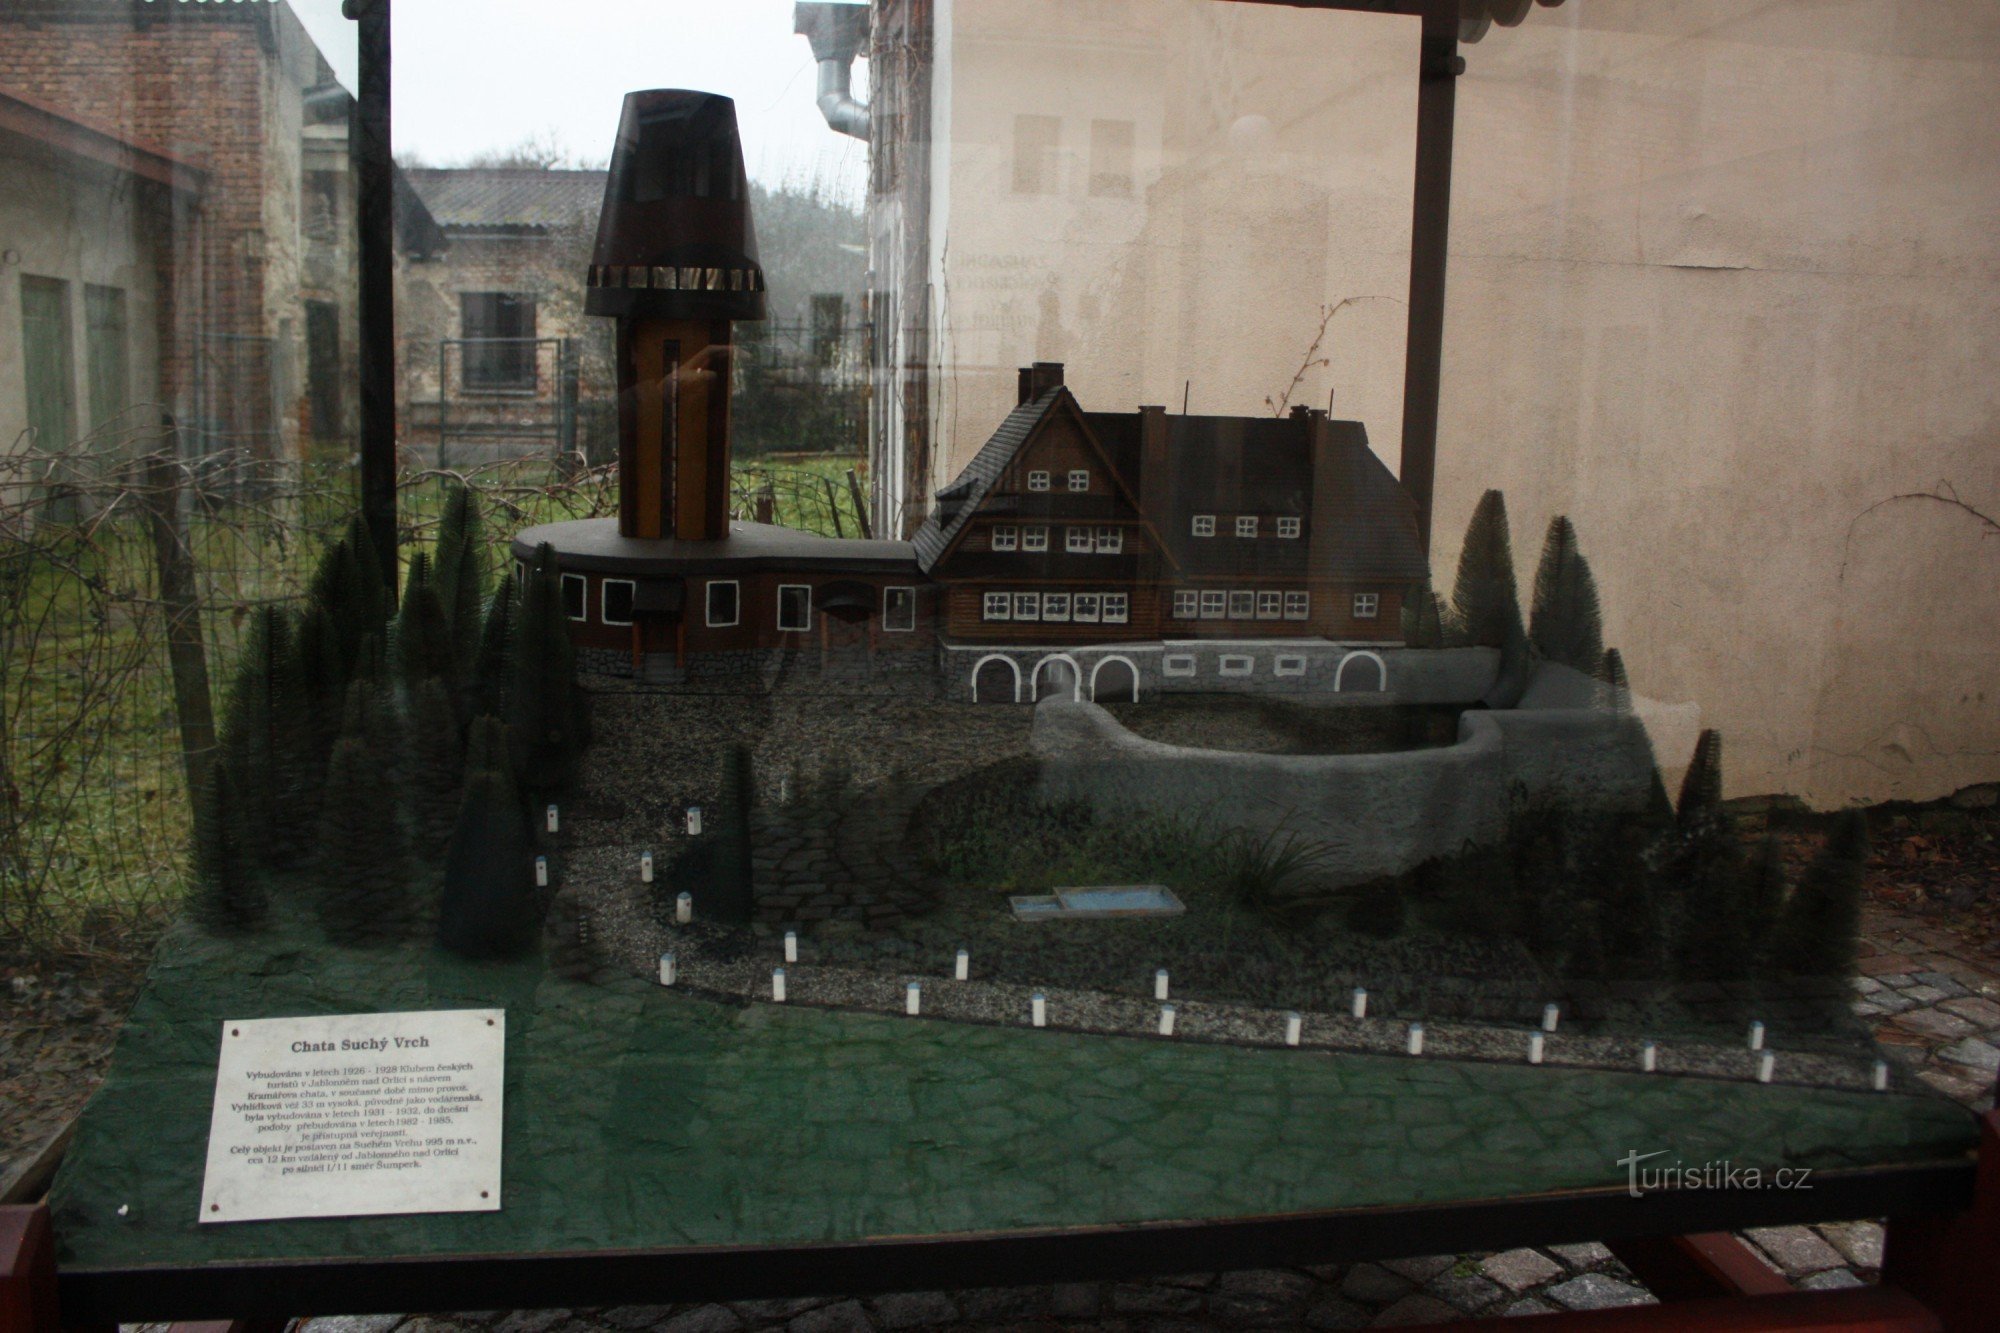 Modell av stugan och utsiktstornet på Suché Vrch i Jablonné i Orlickébergen